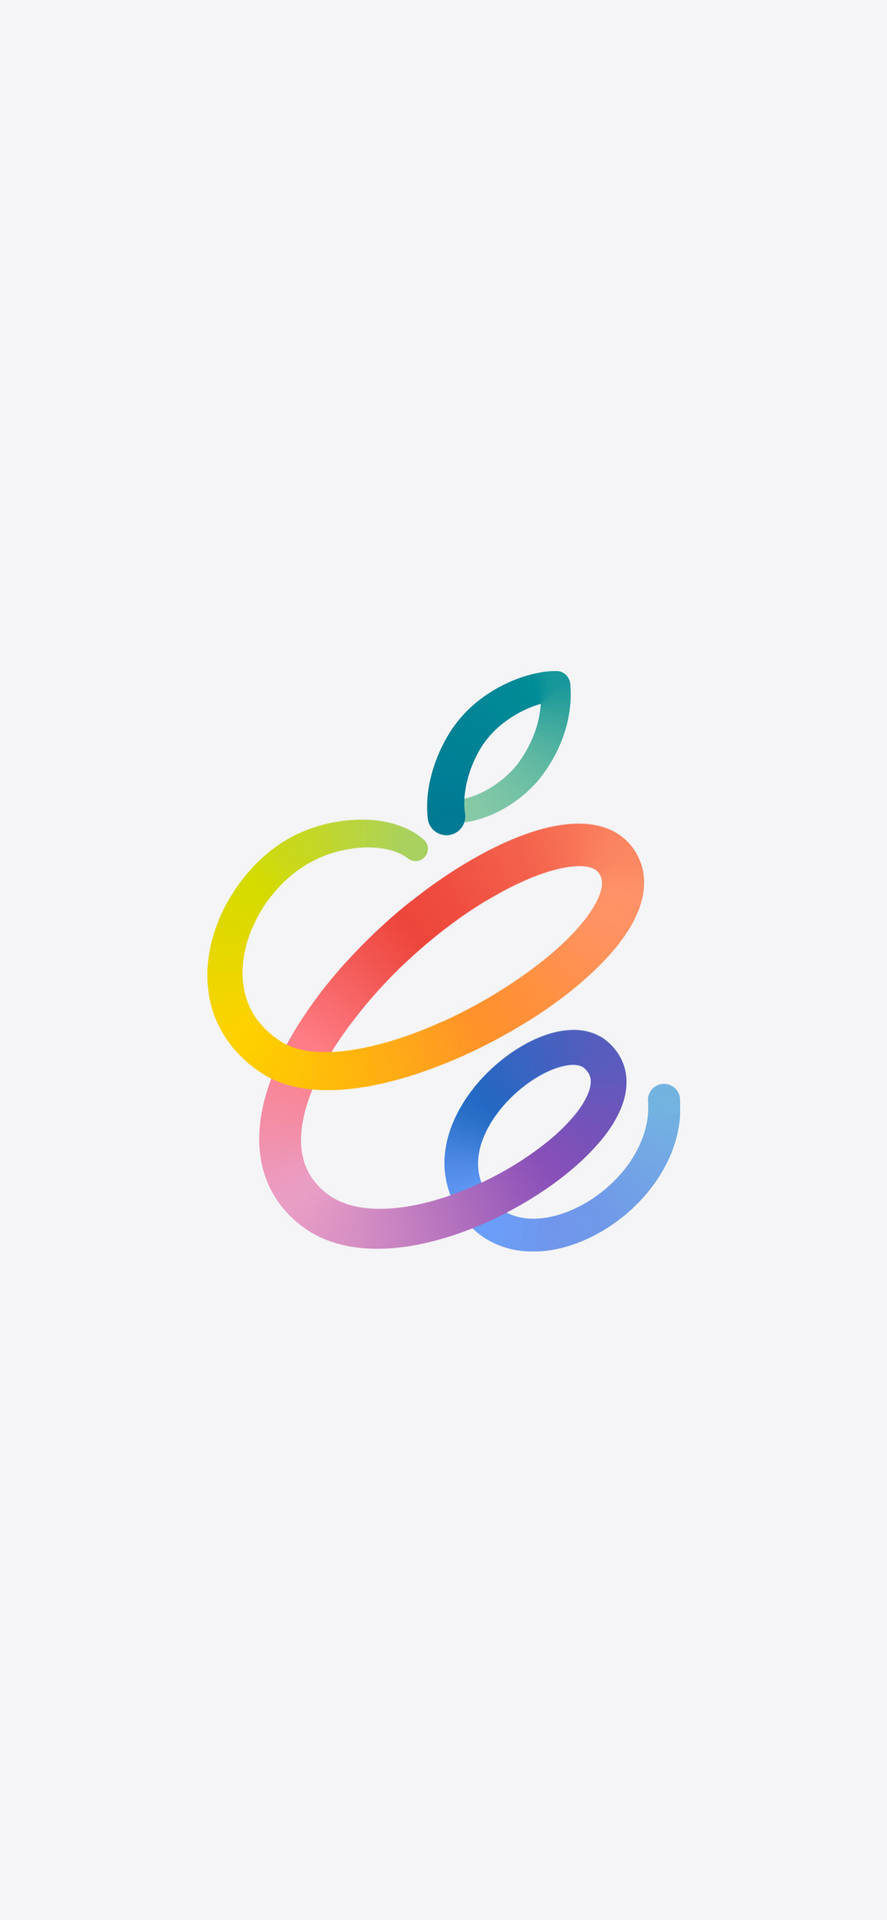 Artedel Logo De Apple En El Iphone 2021. Fondo de pantalla